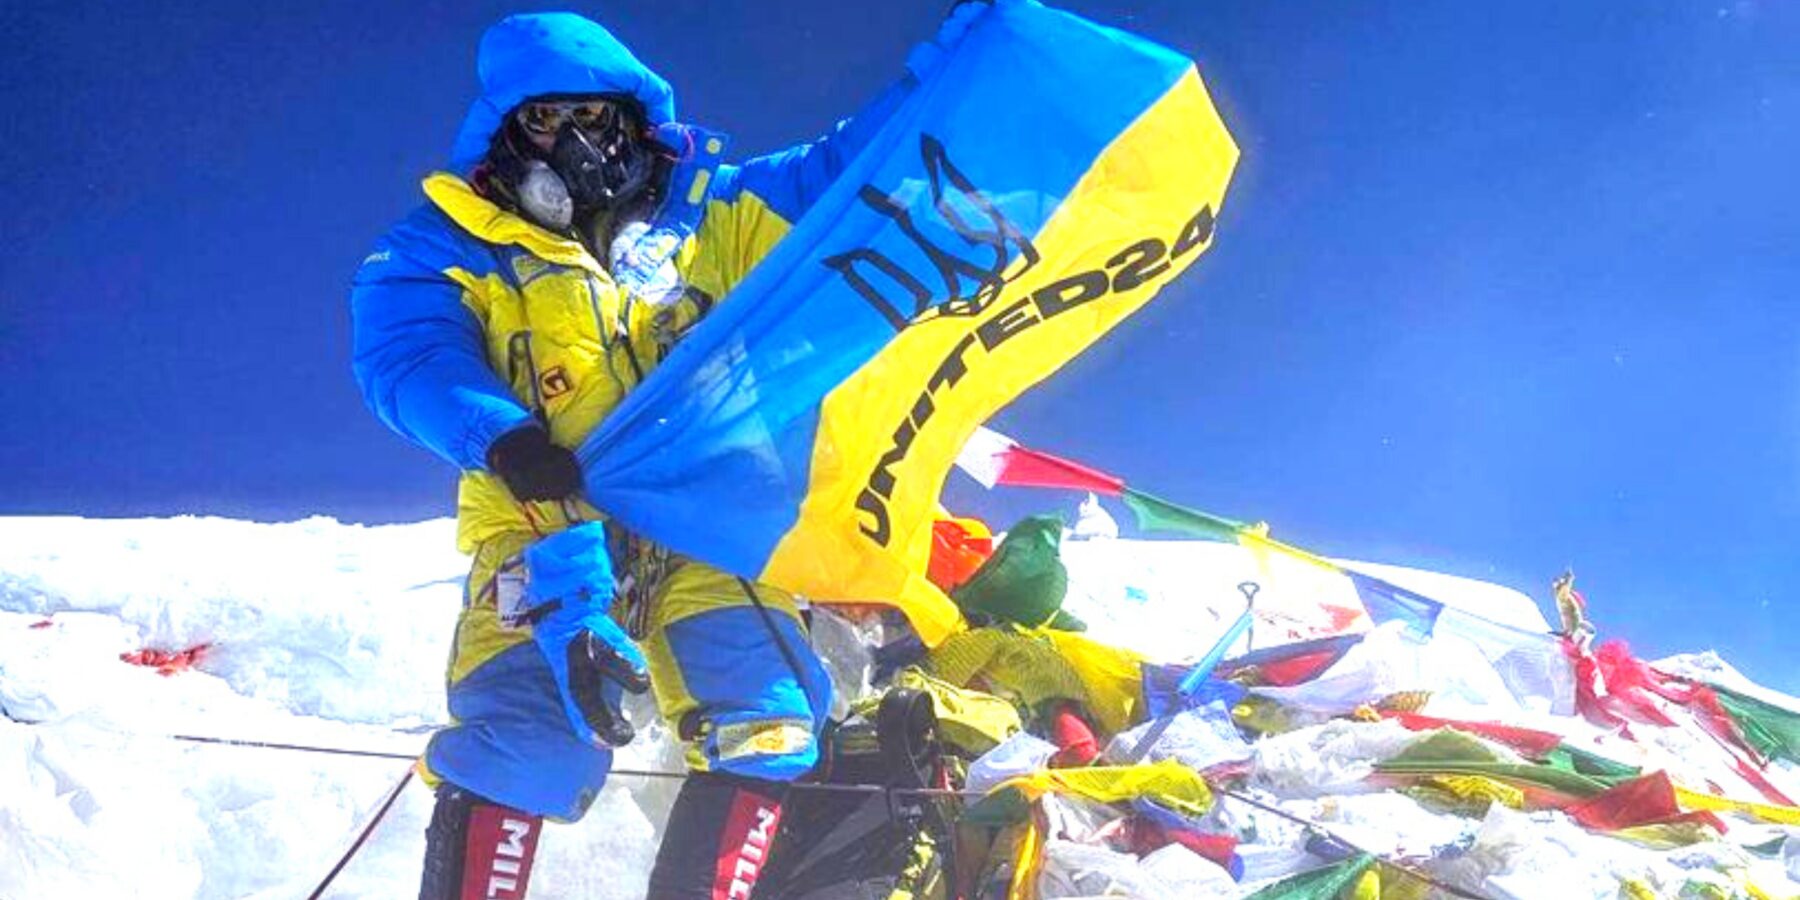 Український альпініст встановив прапор нашої країни на вершині Евересту